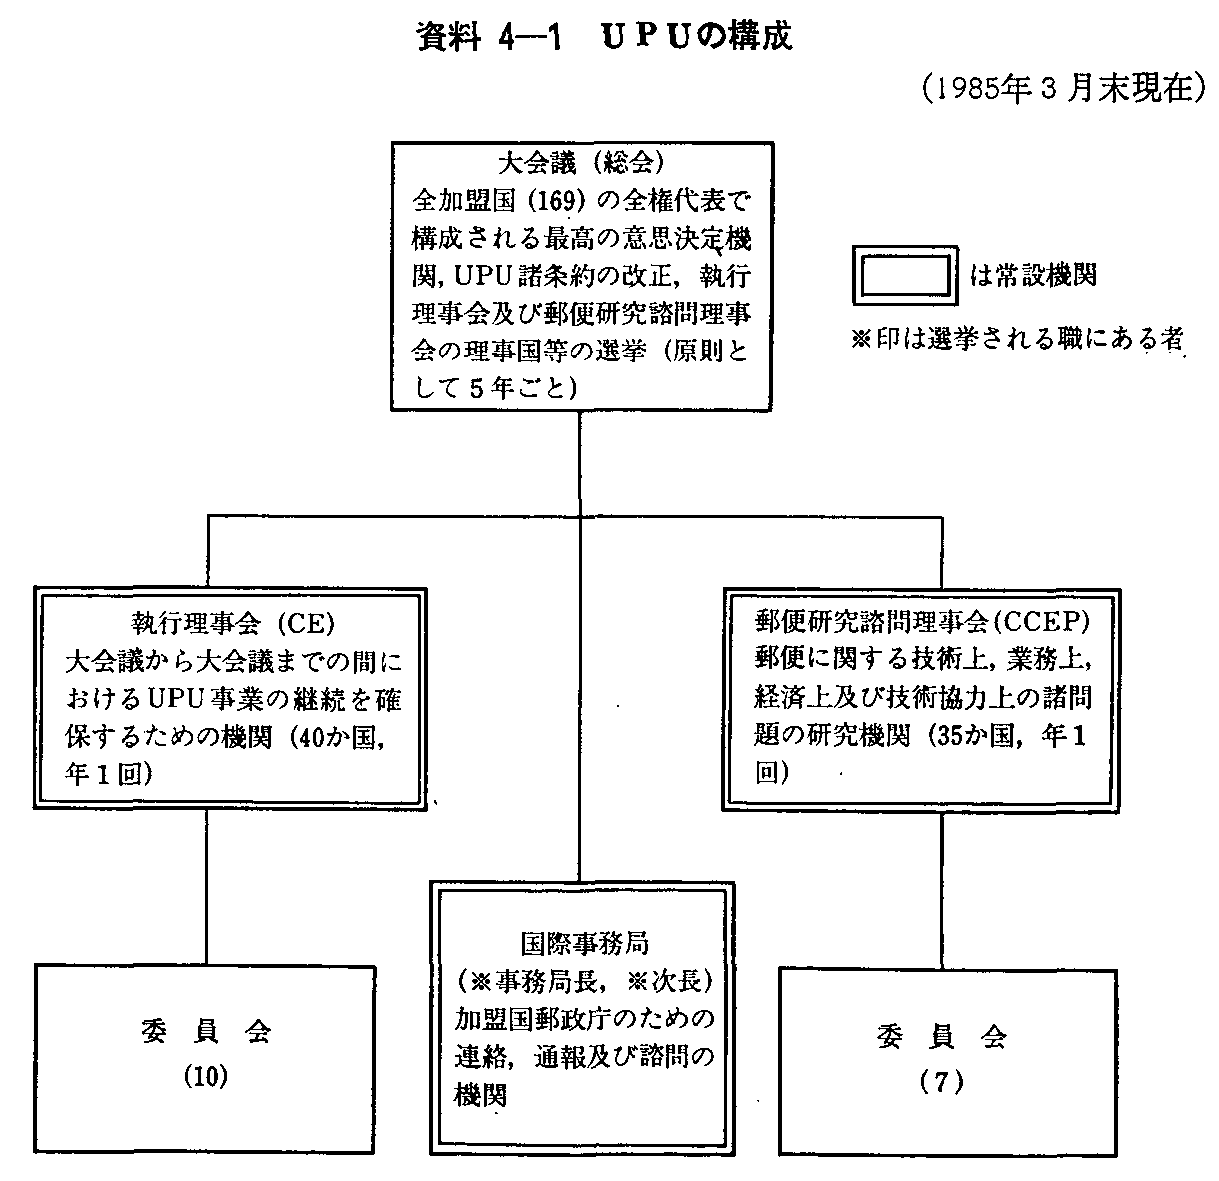 資料4-1 UPUの構成(1985年3月末現在)